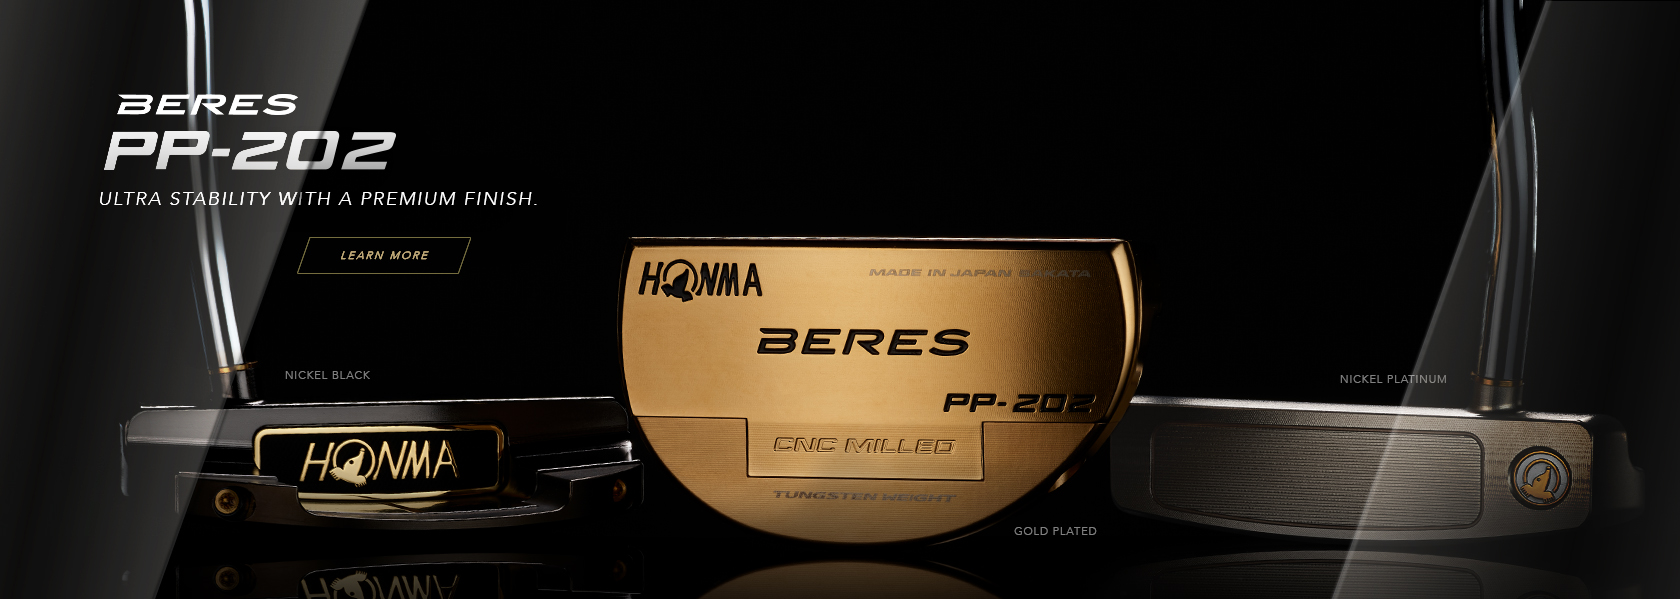 HONMA_BERES PP-202_homepage